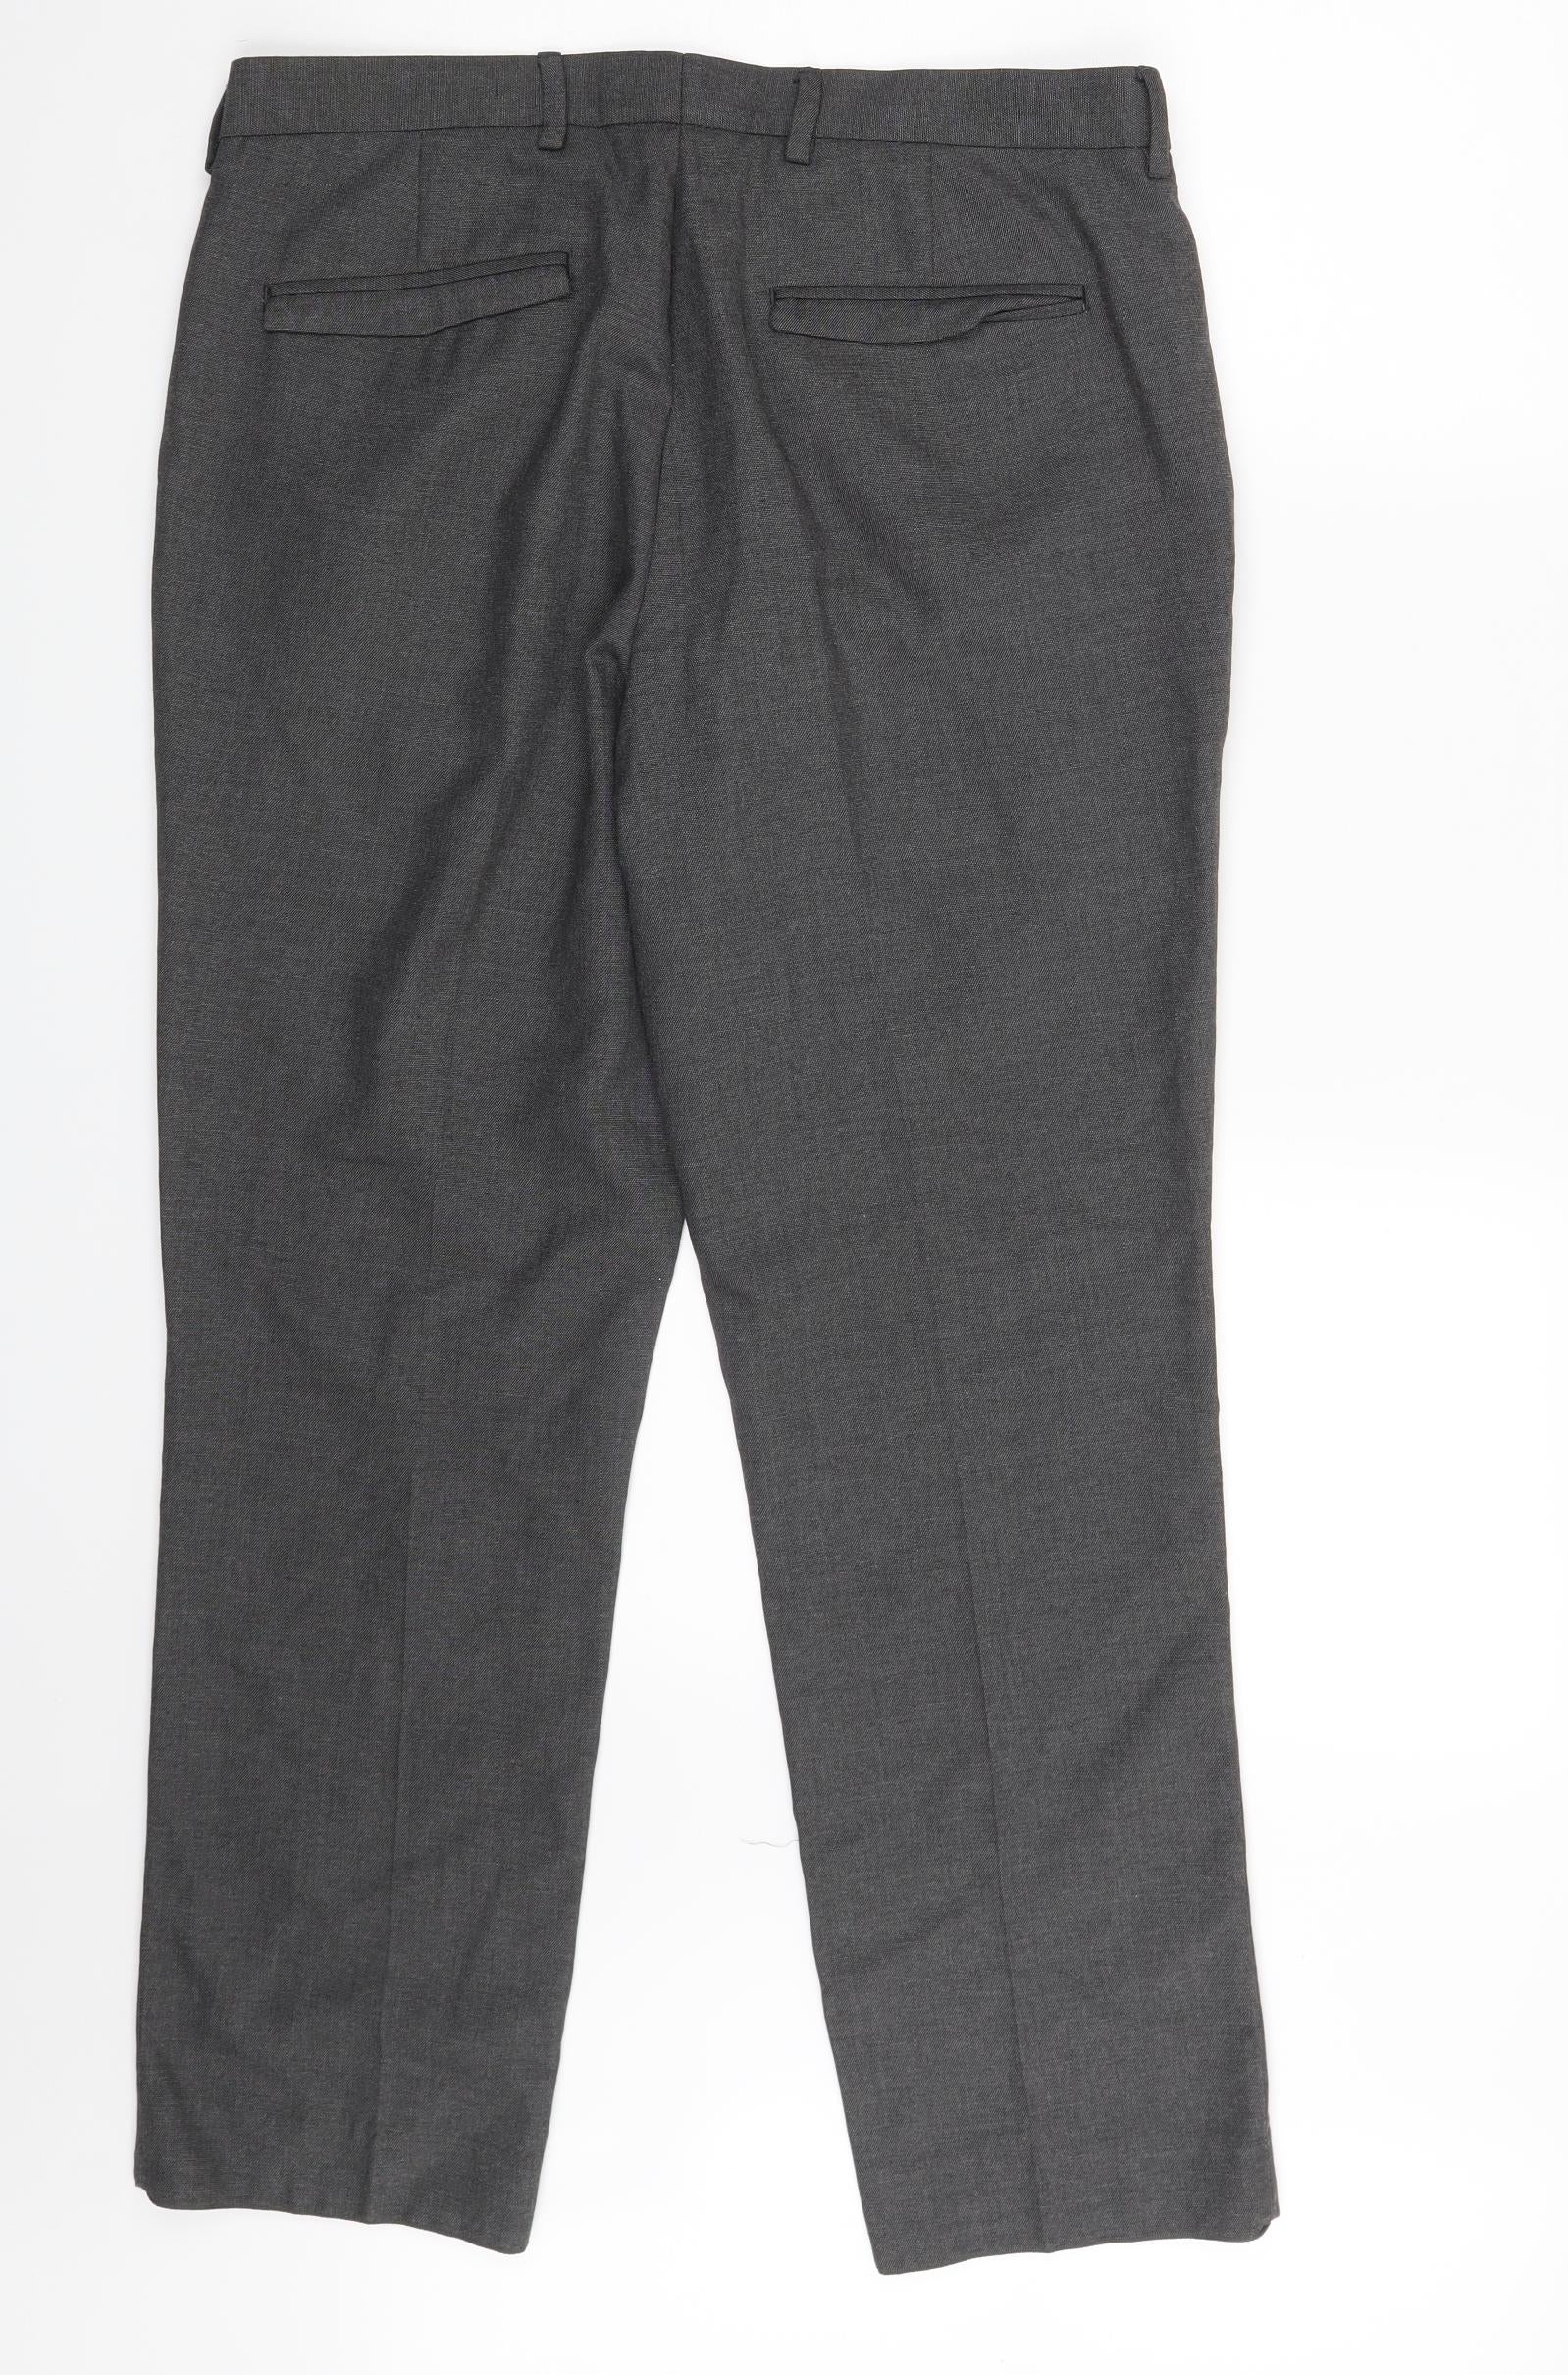 Chino trousers Fria size 34-54 pattern